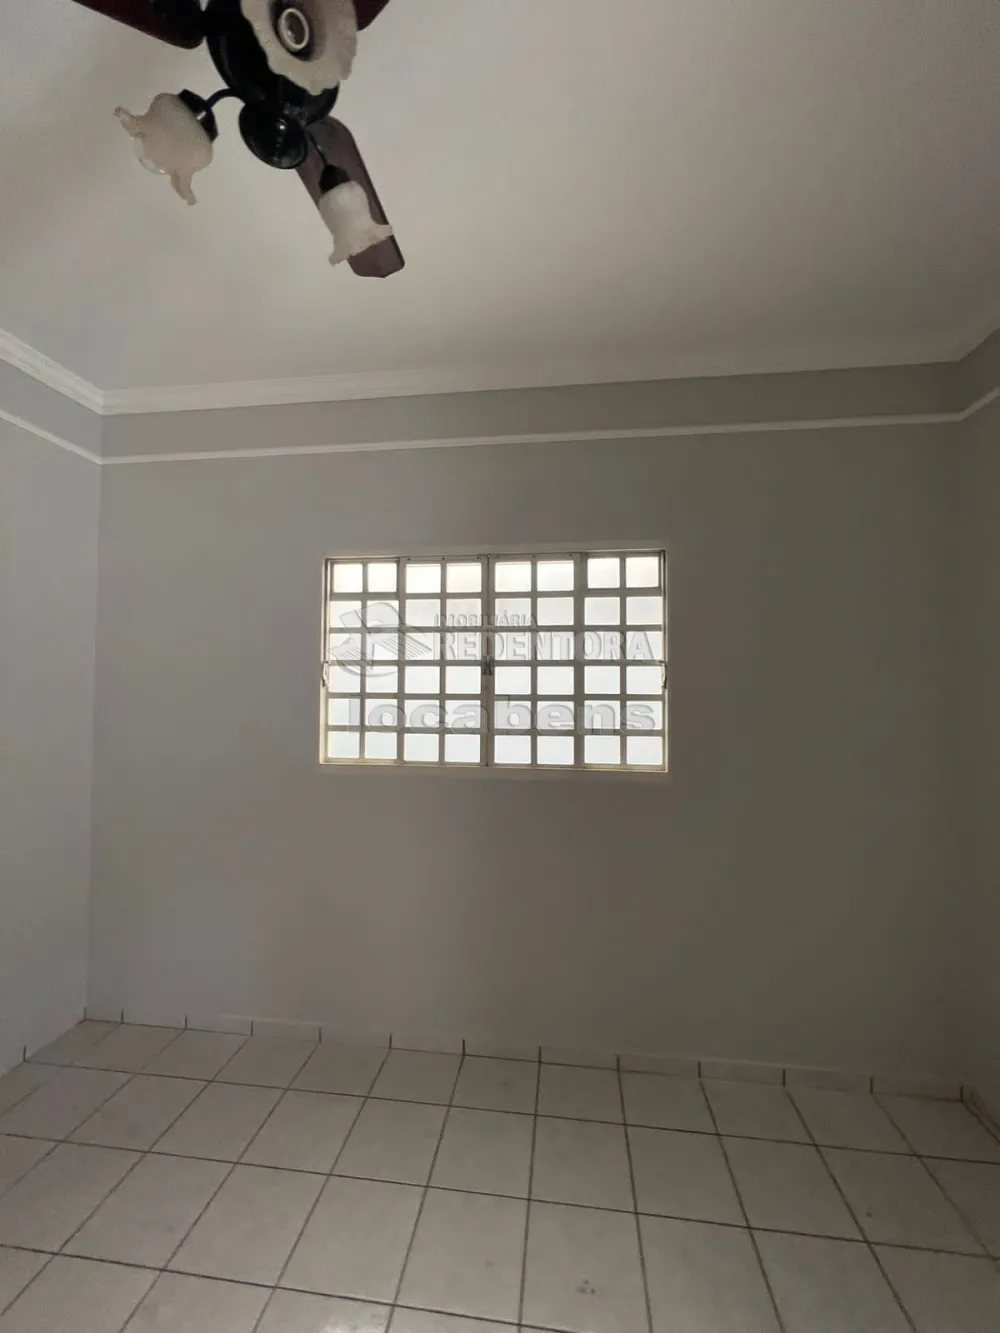 Alugar Casa / Padrão em São José do Rio Preto apenas R$ 1.500,00 - Foto 5